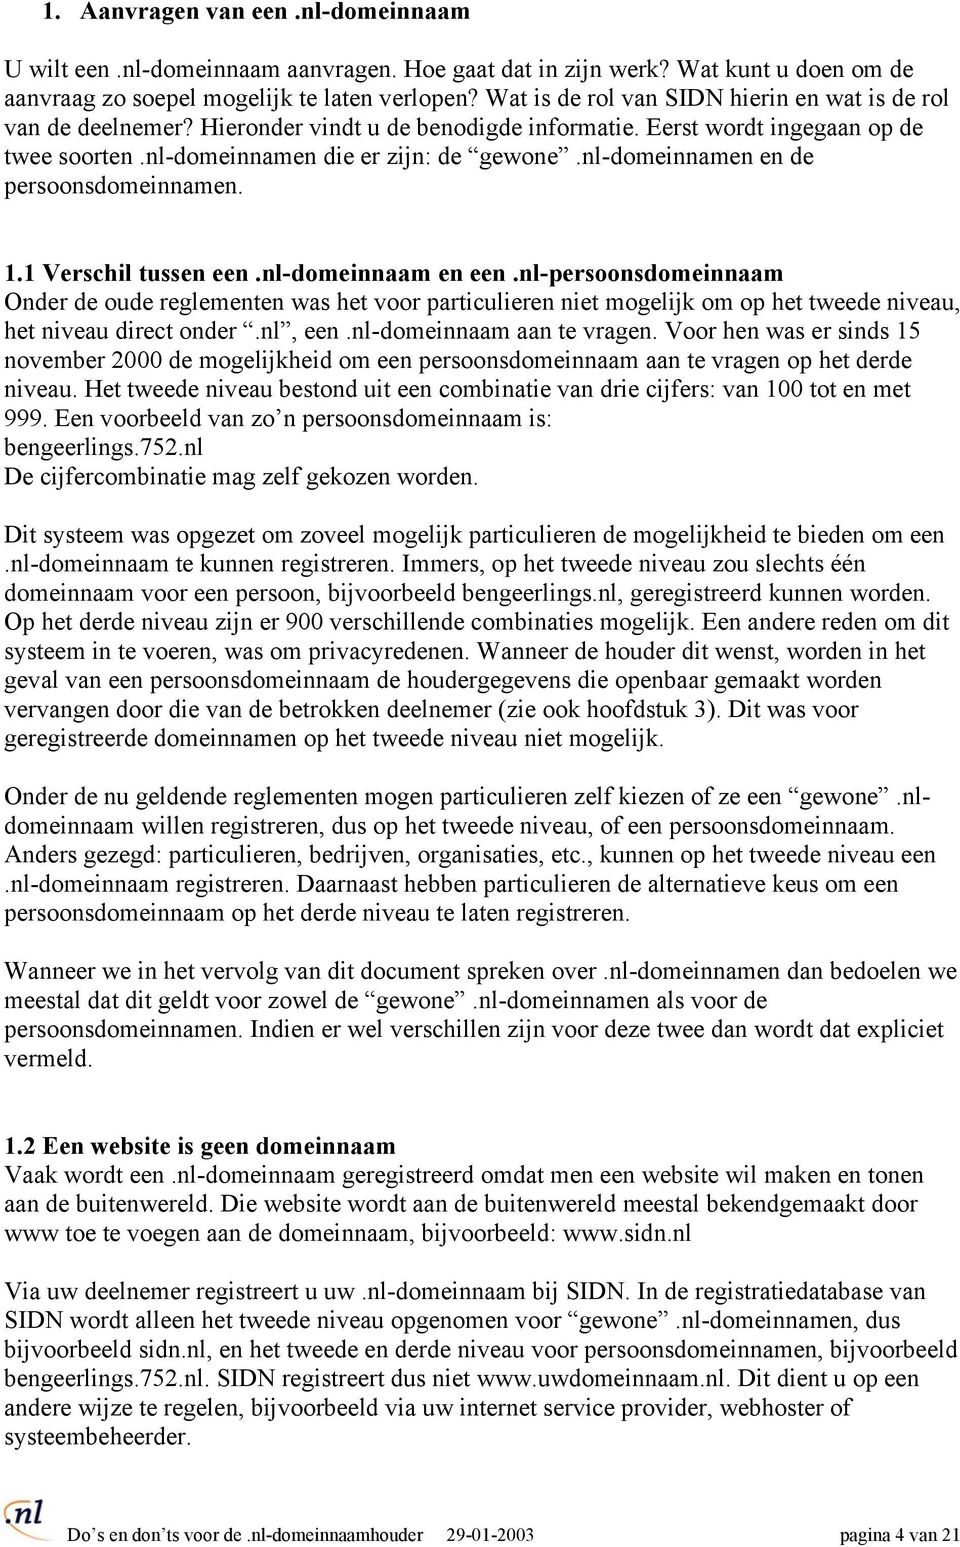 nl-domeinnamen en de persoonsdomeinnamen. 1.1 Verschil tussen een.nl-domeinnaam en een.